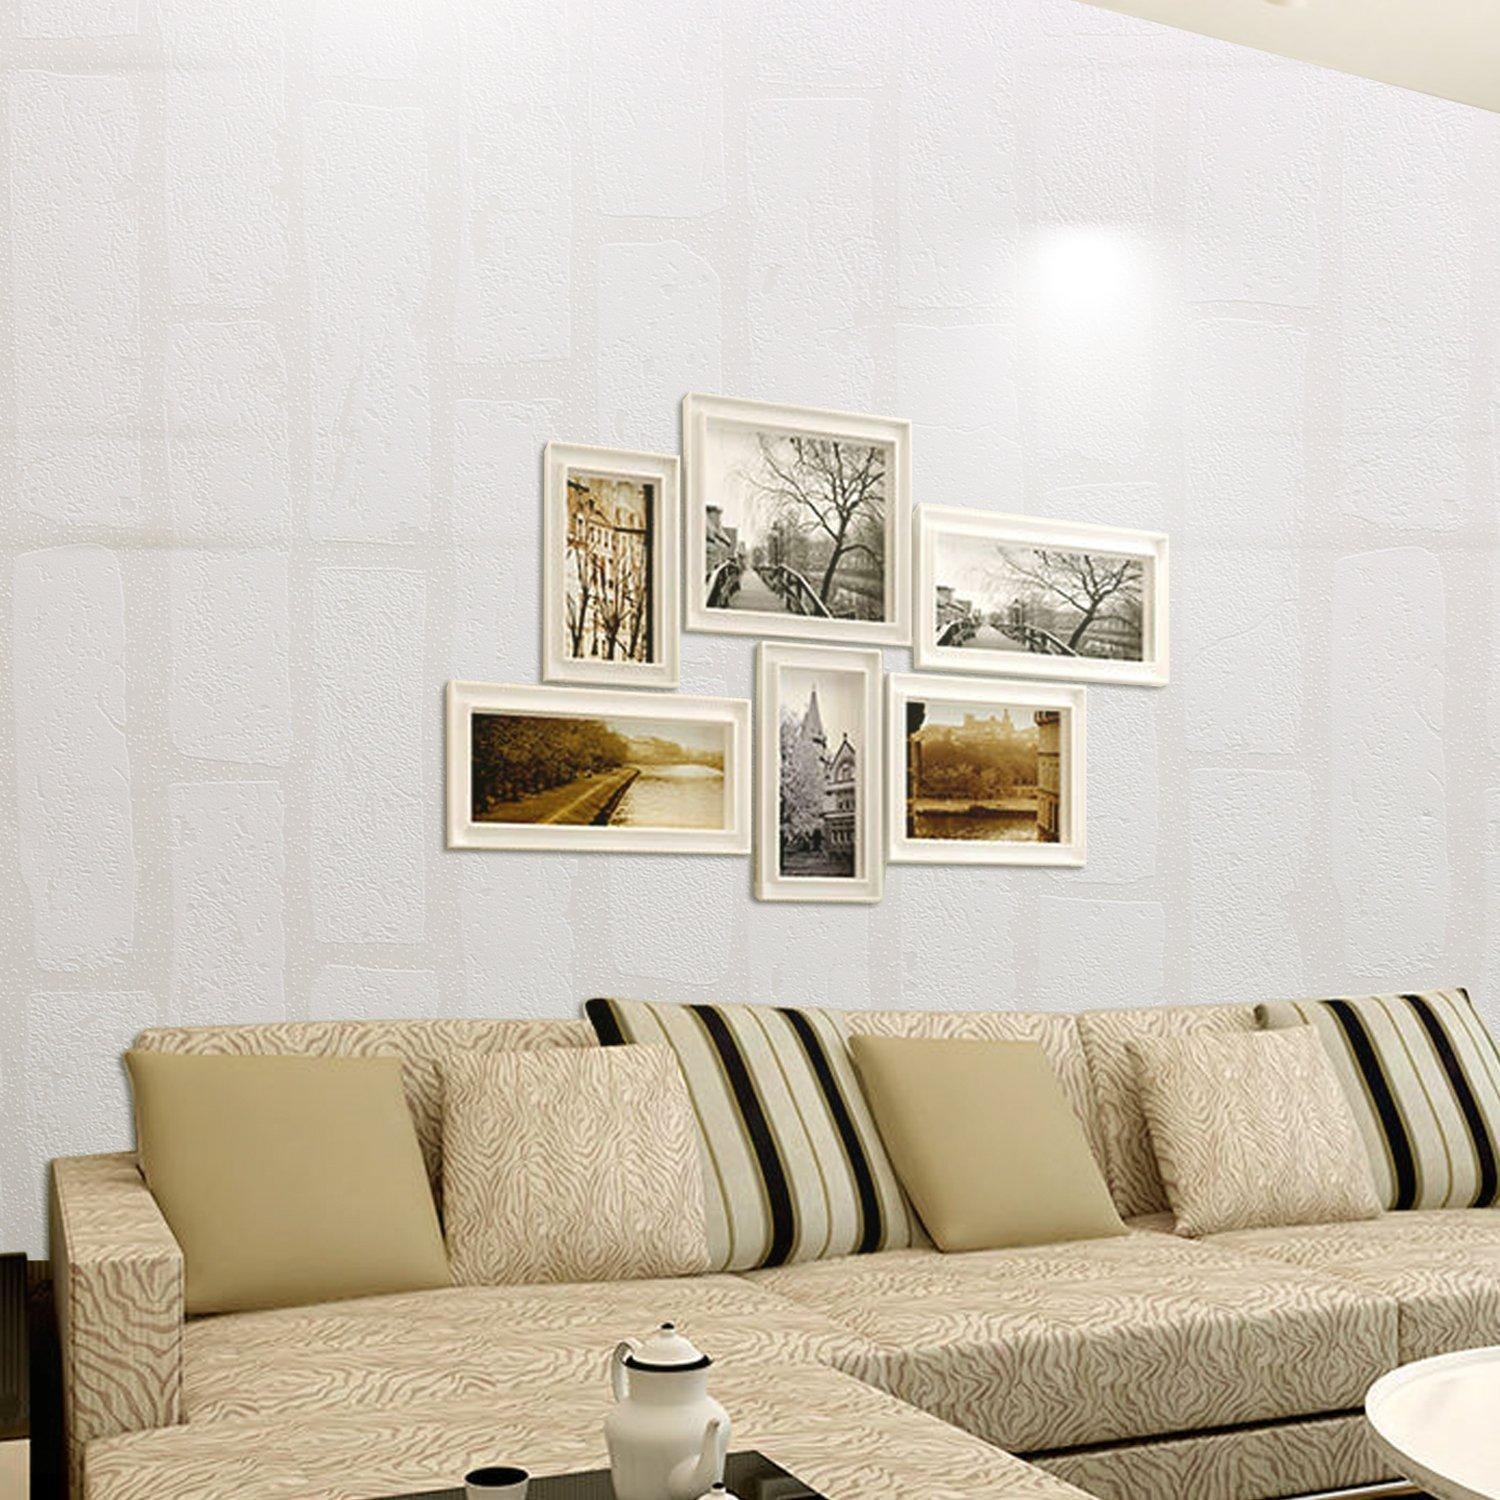 decorazioni per la casa carta da parati coreana,soggiorno,mobilia,camera,divano,interior design